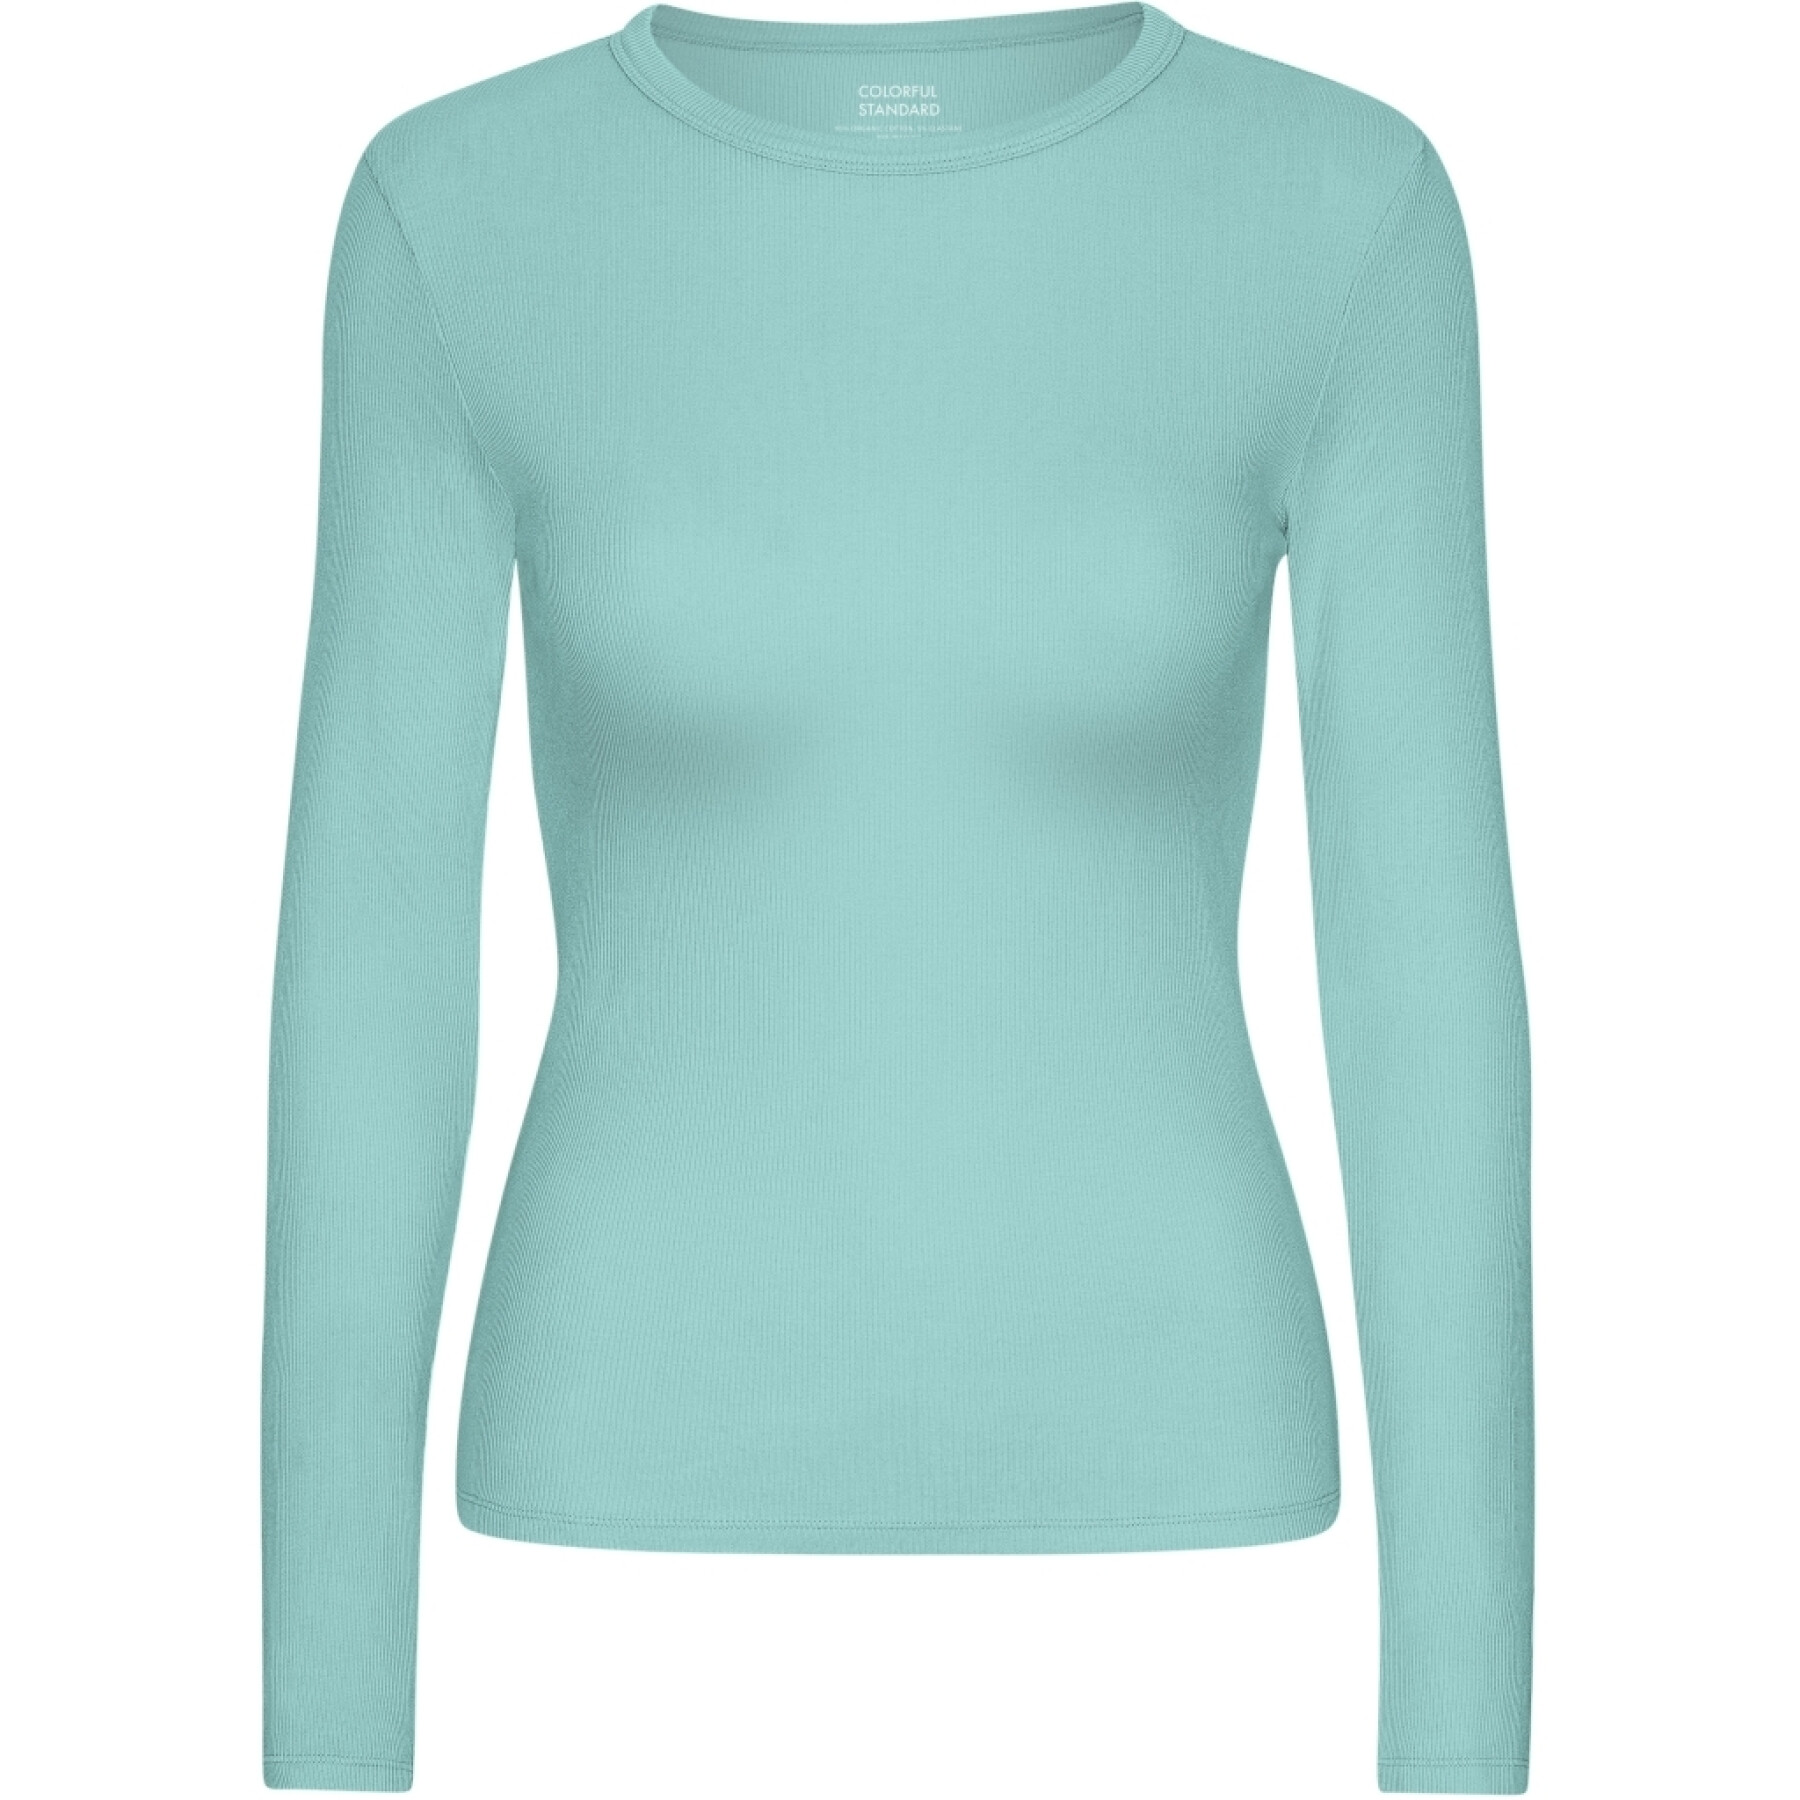 Dames-T-shirt met lange mouwen Colorful Standard Organic Teal Blue